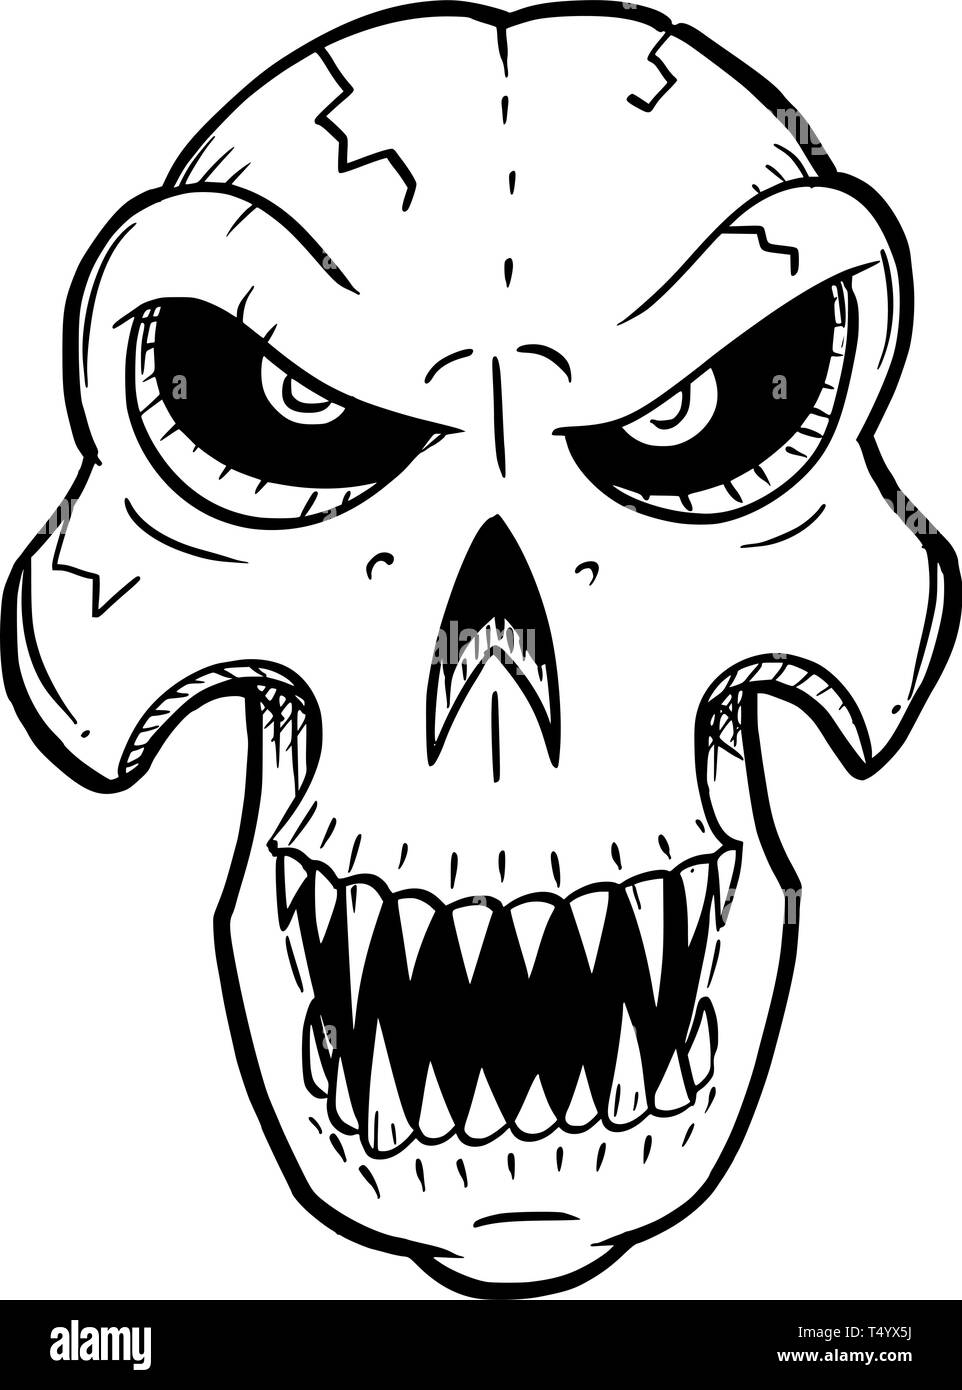 Cartoon Zeichnung konzeptuelle Darstellung von wütenden Monster Schädel mit scharfen Zähnen nach vorne. Stock Vektor